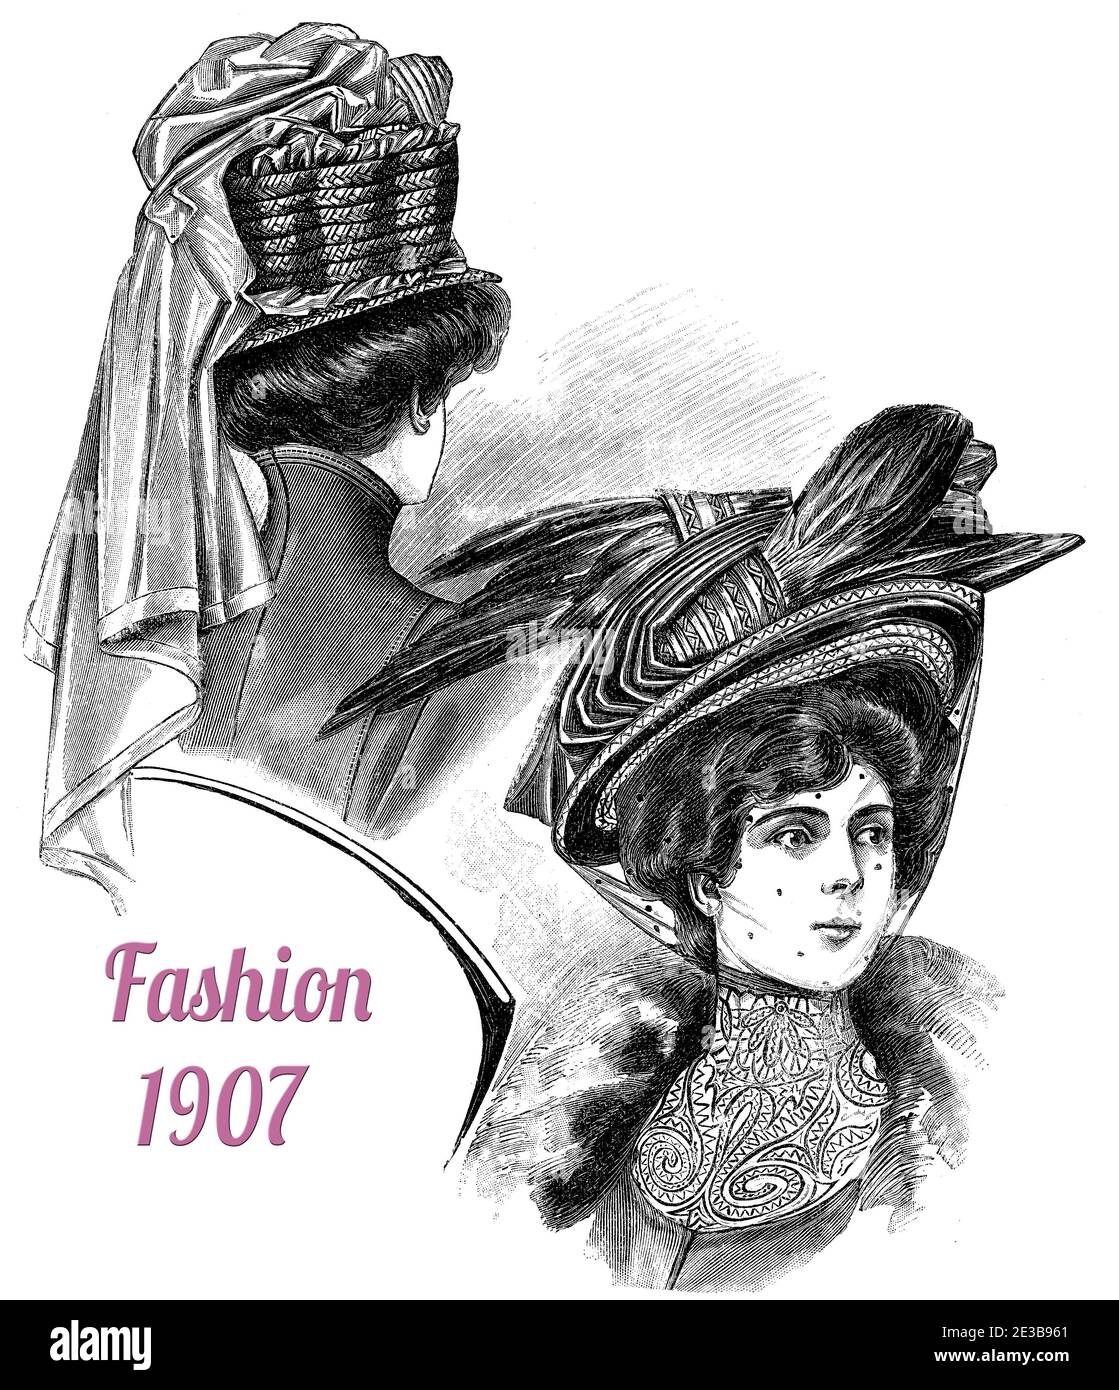 Sombrero de señoras y moda de peluquería 1907, sombreros anchos con plumas y confección de cinta elaborada, Gibson niña peinado con pelos apilados, blusa de cuello alto, cordones y abrigo con cuello de piel Foto de stock